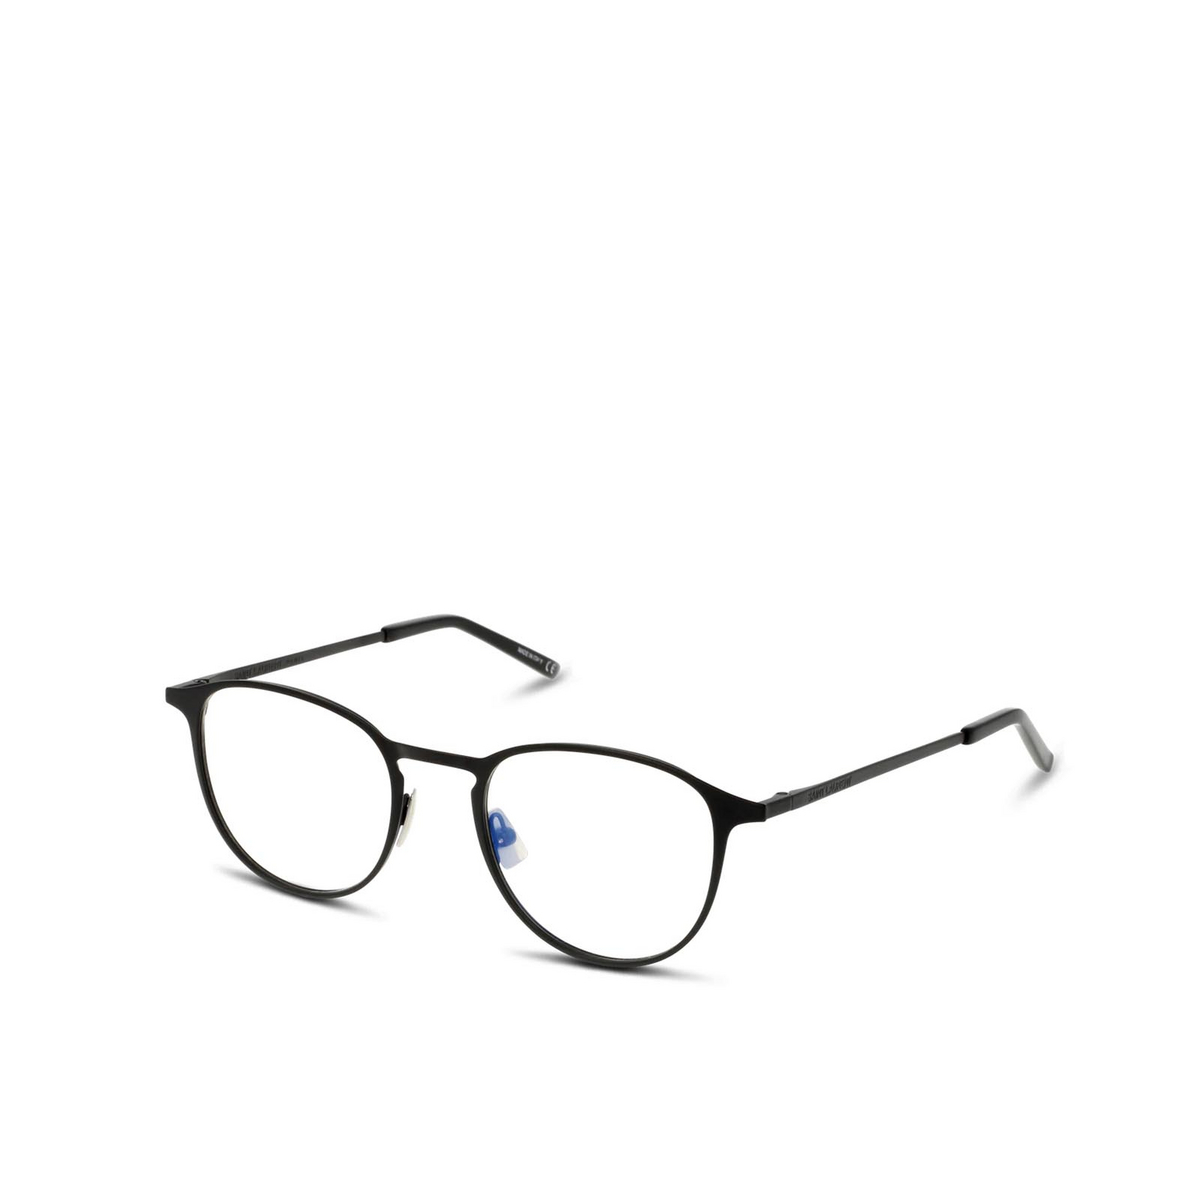 Saint Laurent® Round Eyeglasses: SL 179 color Black 001 - 2/2.